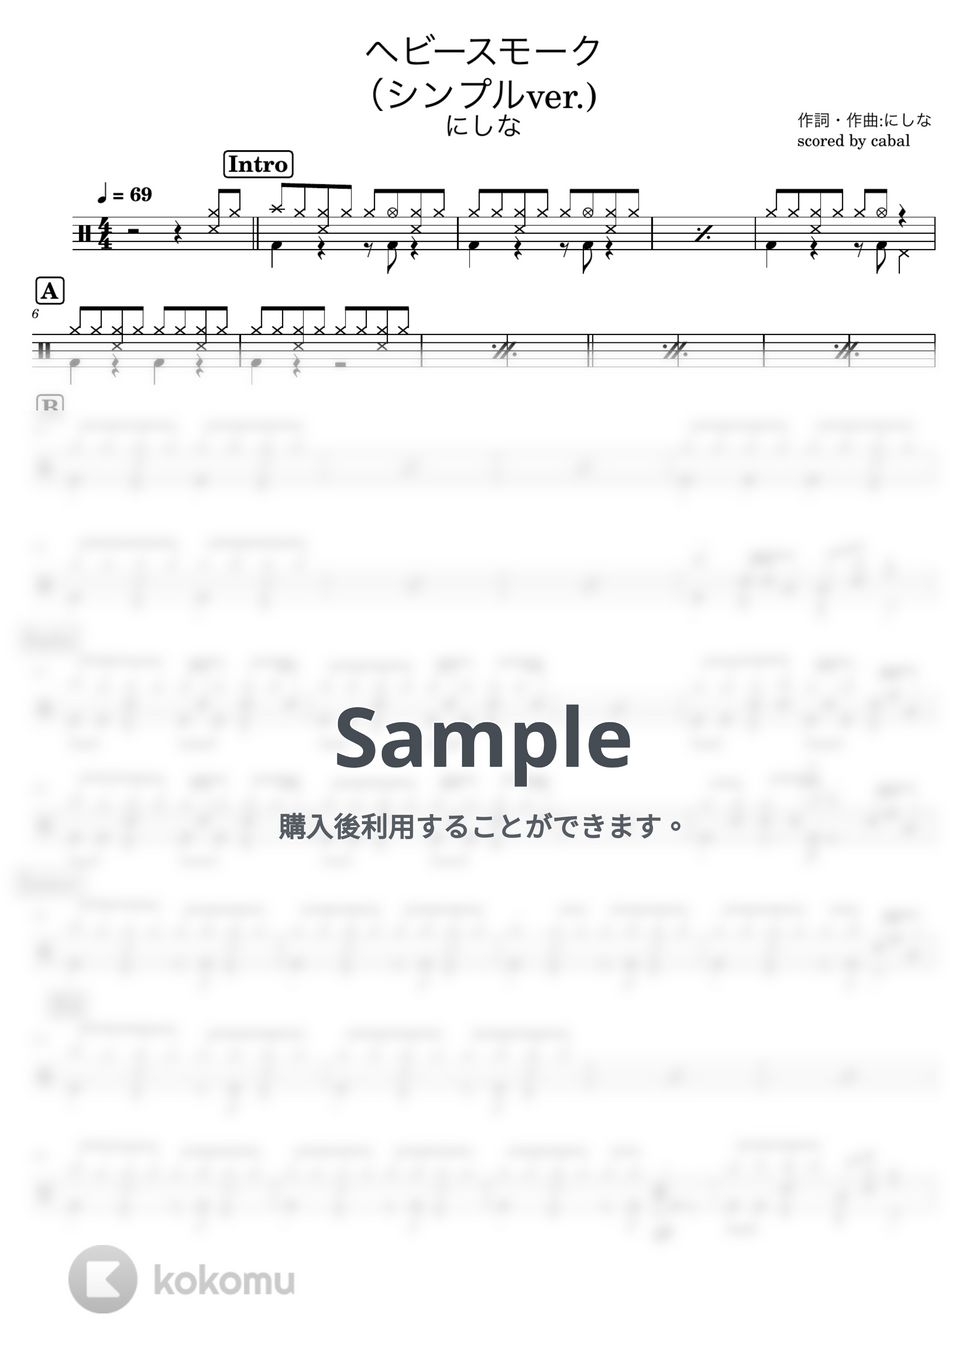 にしな - ヘビースモーク（シンプルver.） (ドラム譜面/初心者向けアレンジ) by cabal